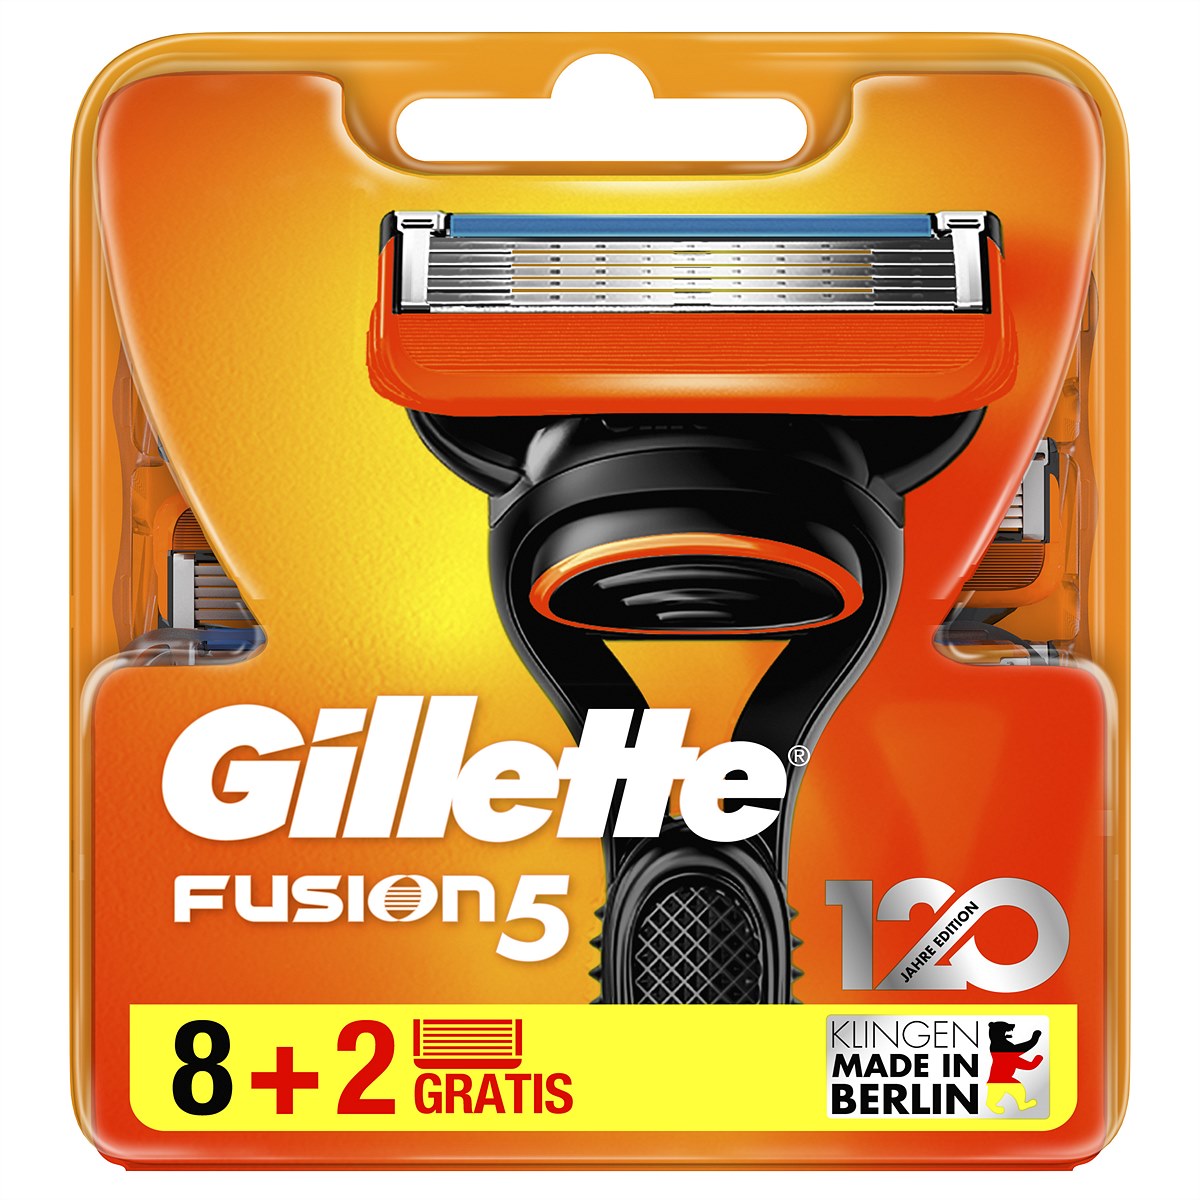 Die Gillette Fusion5 8er-Klingenpackung enthält im Jubiläumsmonat zwei zusätzliche Klingen. 